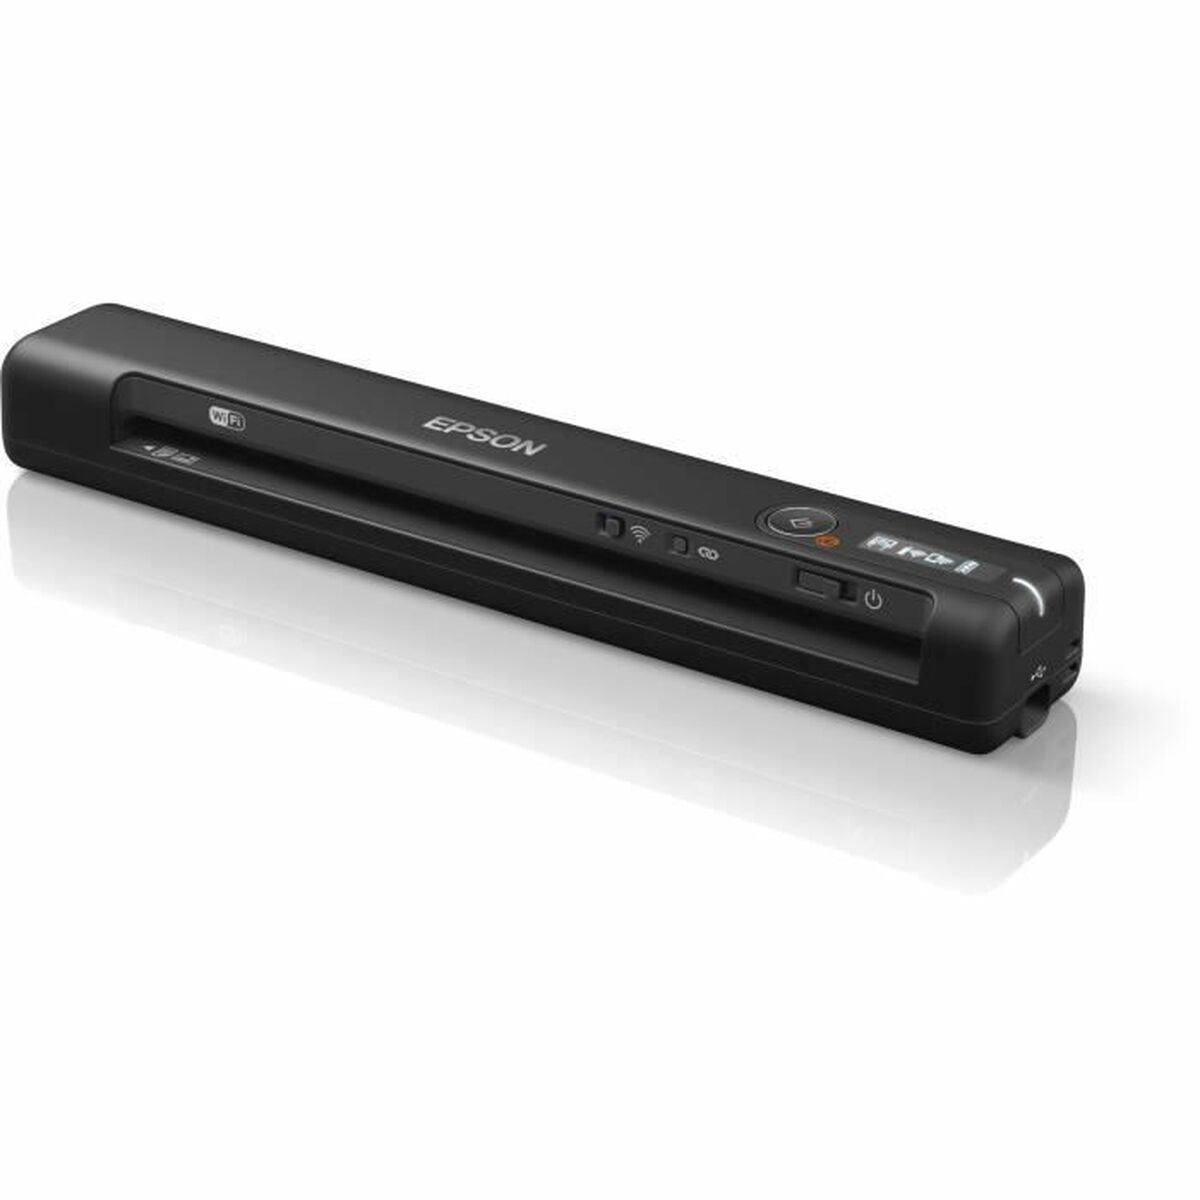 Портативный сканер Epson B11B253401 600 dpi WIFI USB 2.0